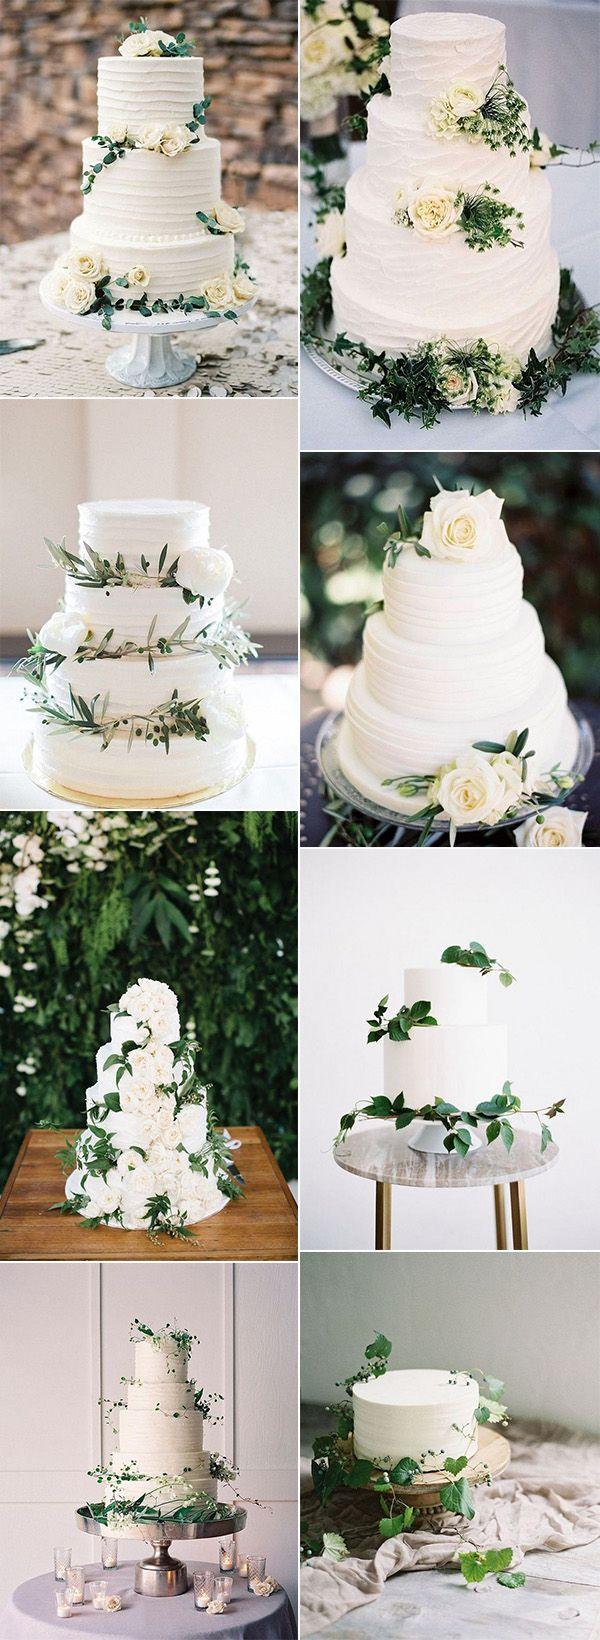 Свадьба - 15 Amazing White And Green Elegant Wedding Cakes